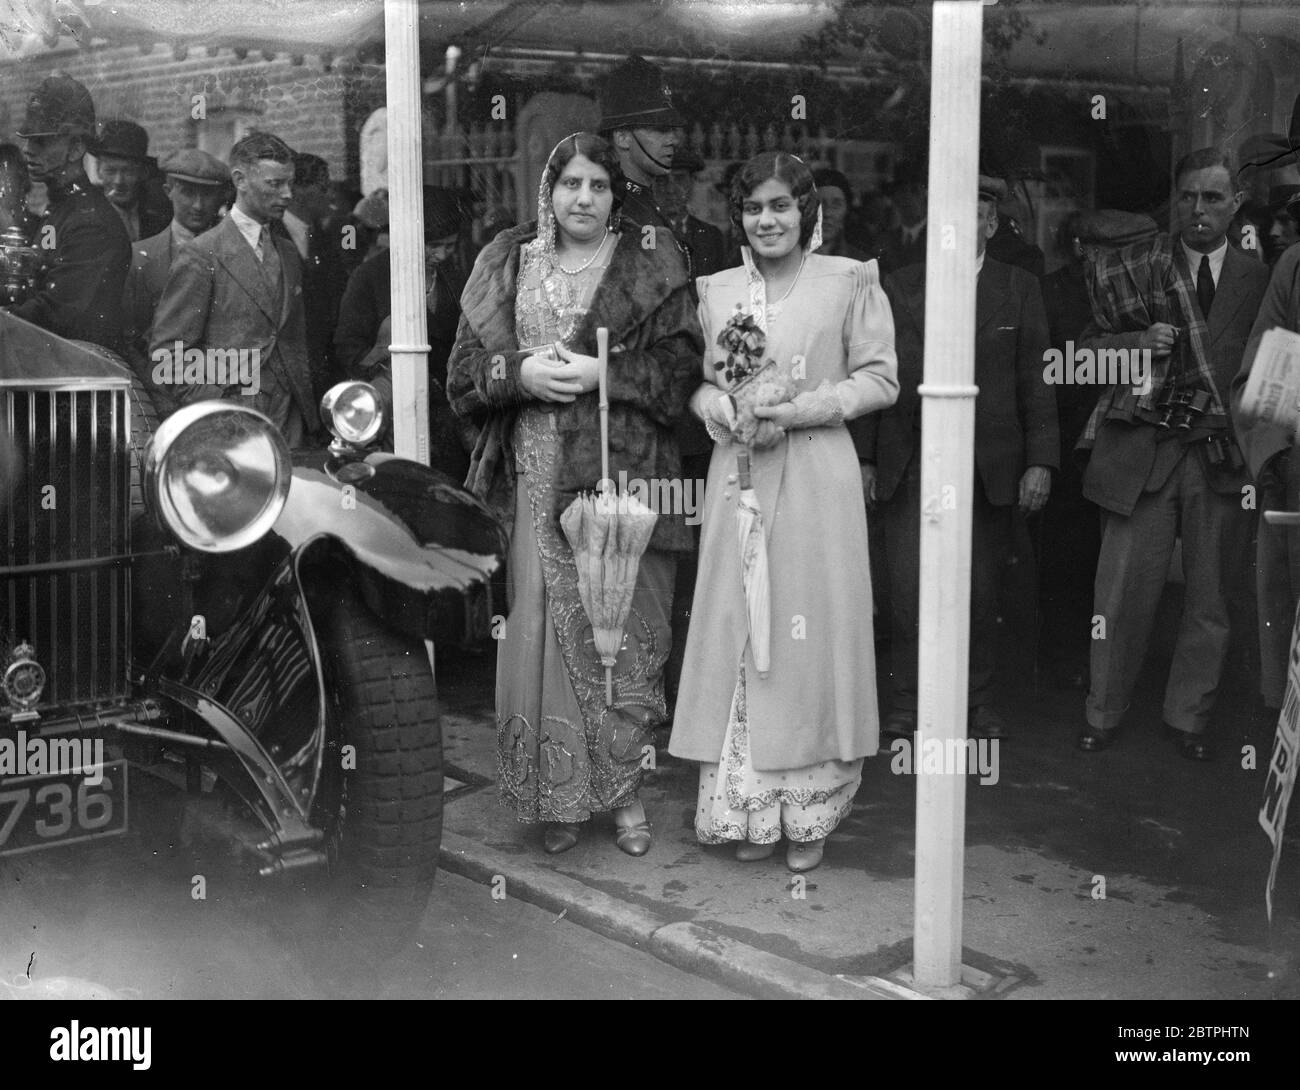 Visiteurs indiens à Ascot . Malgré le temps terne et pluvieux, la foule à la mode habituelle a assisté à l'ouverture de la réunion de course de Royal Ascot . Photos ; Lady Dhunjibhoy Bomanji ( à gauche ) avec sa fille . 13 juin 1933 Banque D'Images